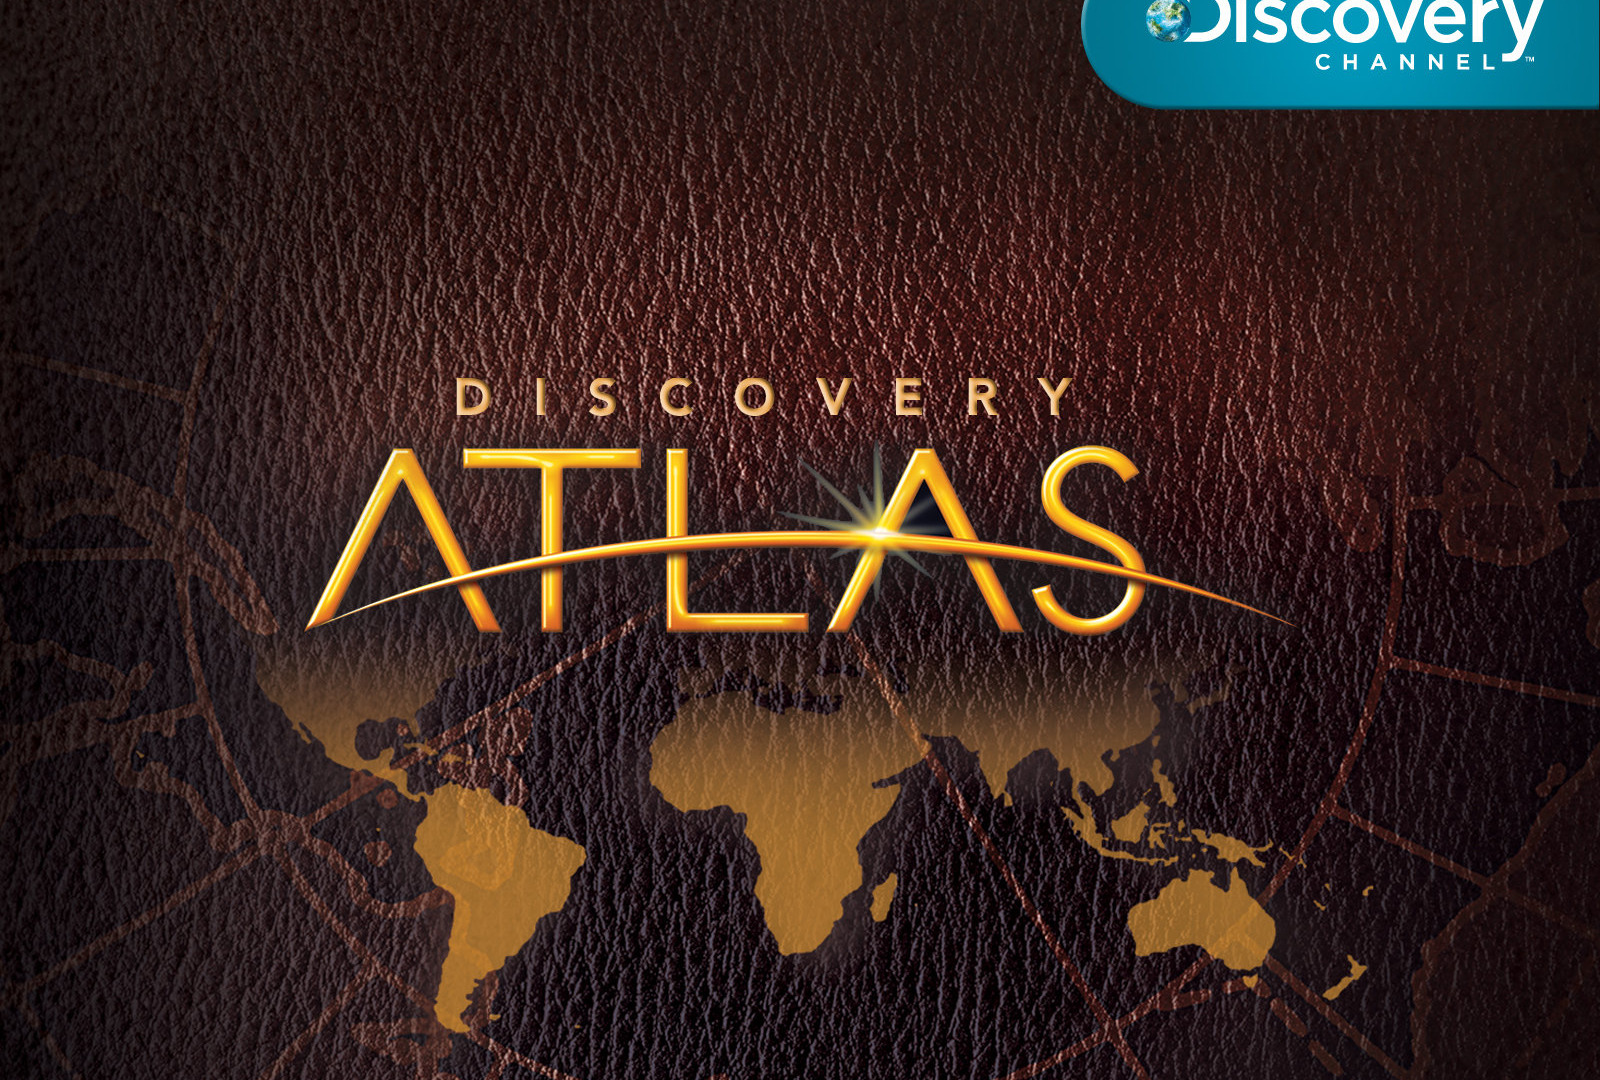 Show Discovery Atlas